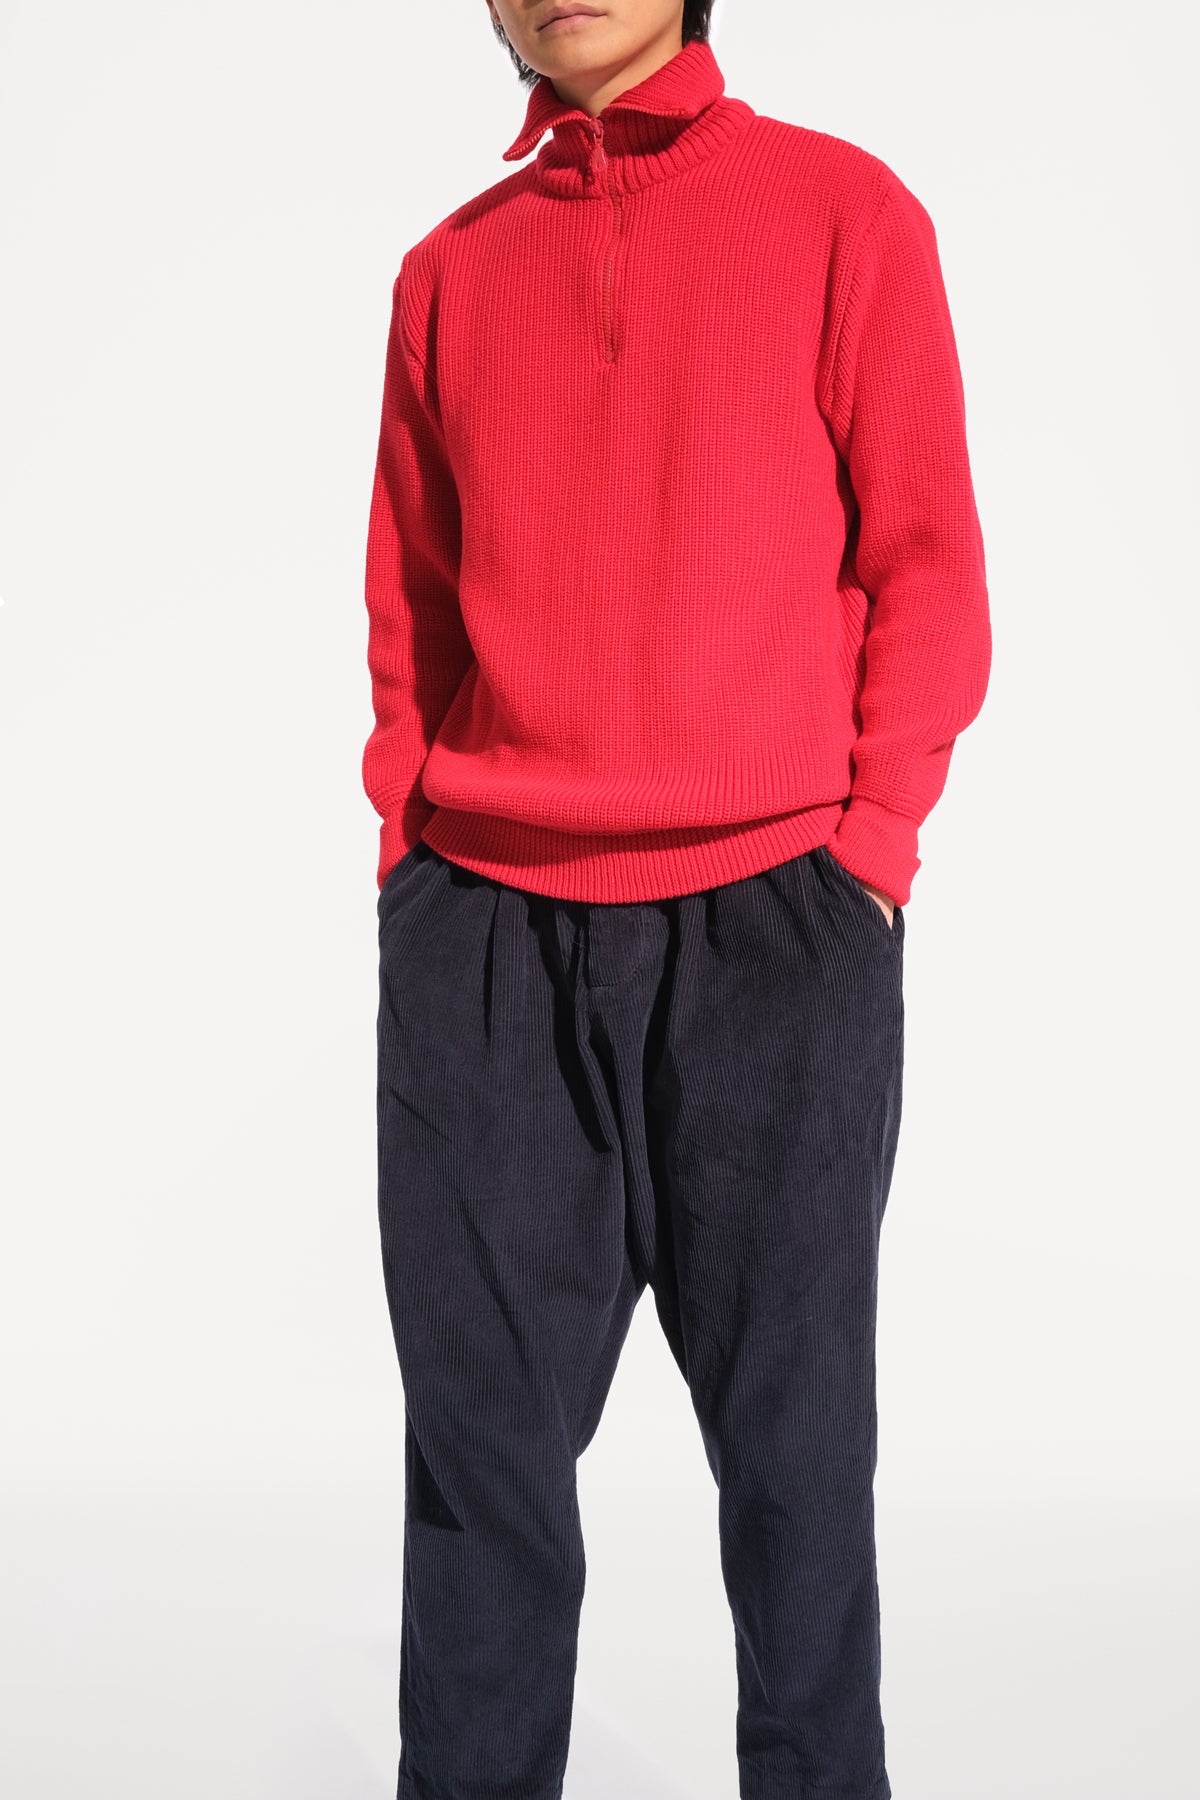 oftt - 04 - half-zip heavy knit  jumper - red - merino wool - image  4